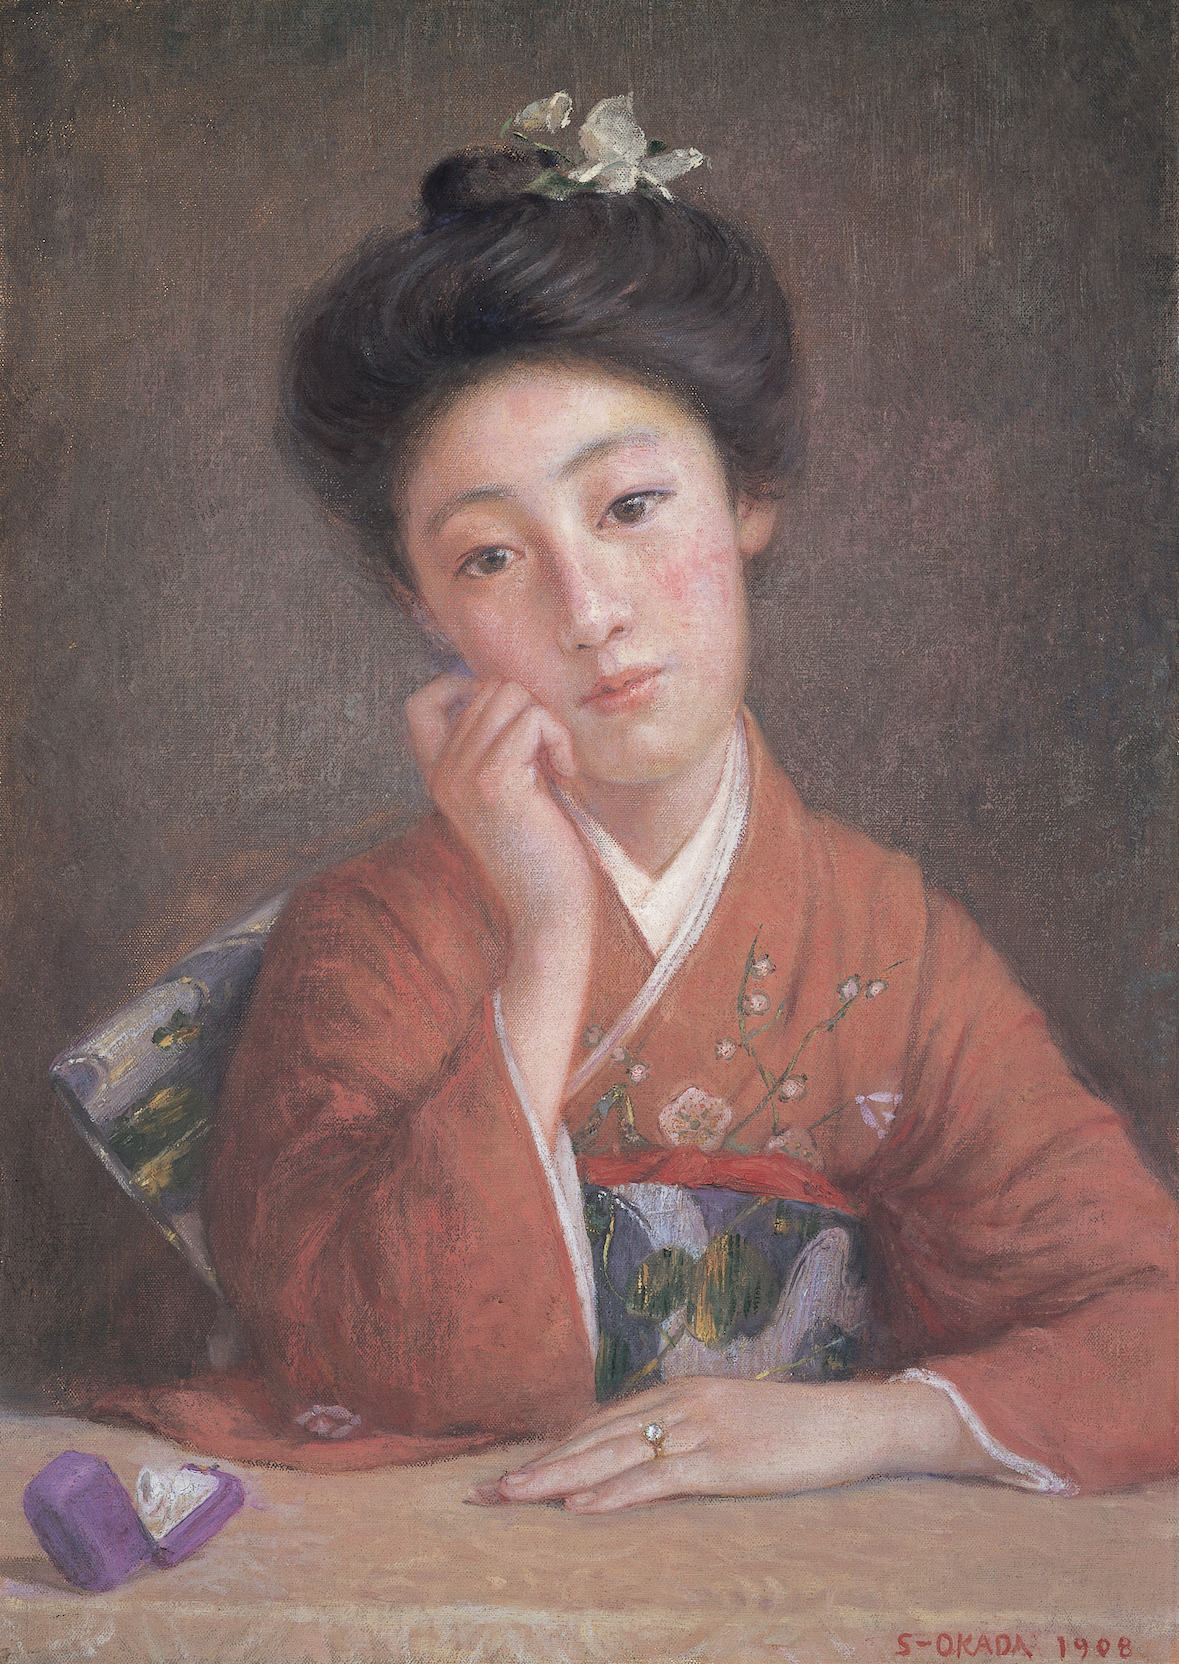 岡田三郎助「ダイヤモンドの女」1908年　福富太郎コレクション資料室蔵